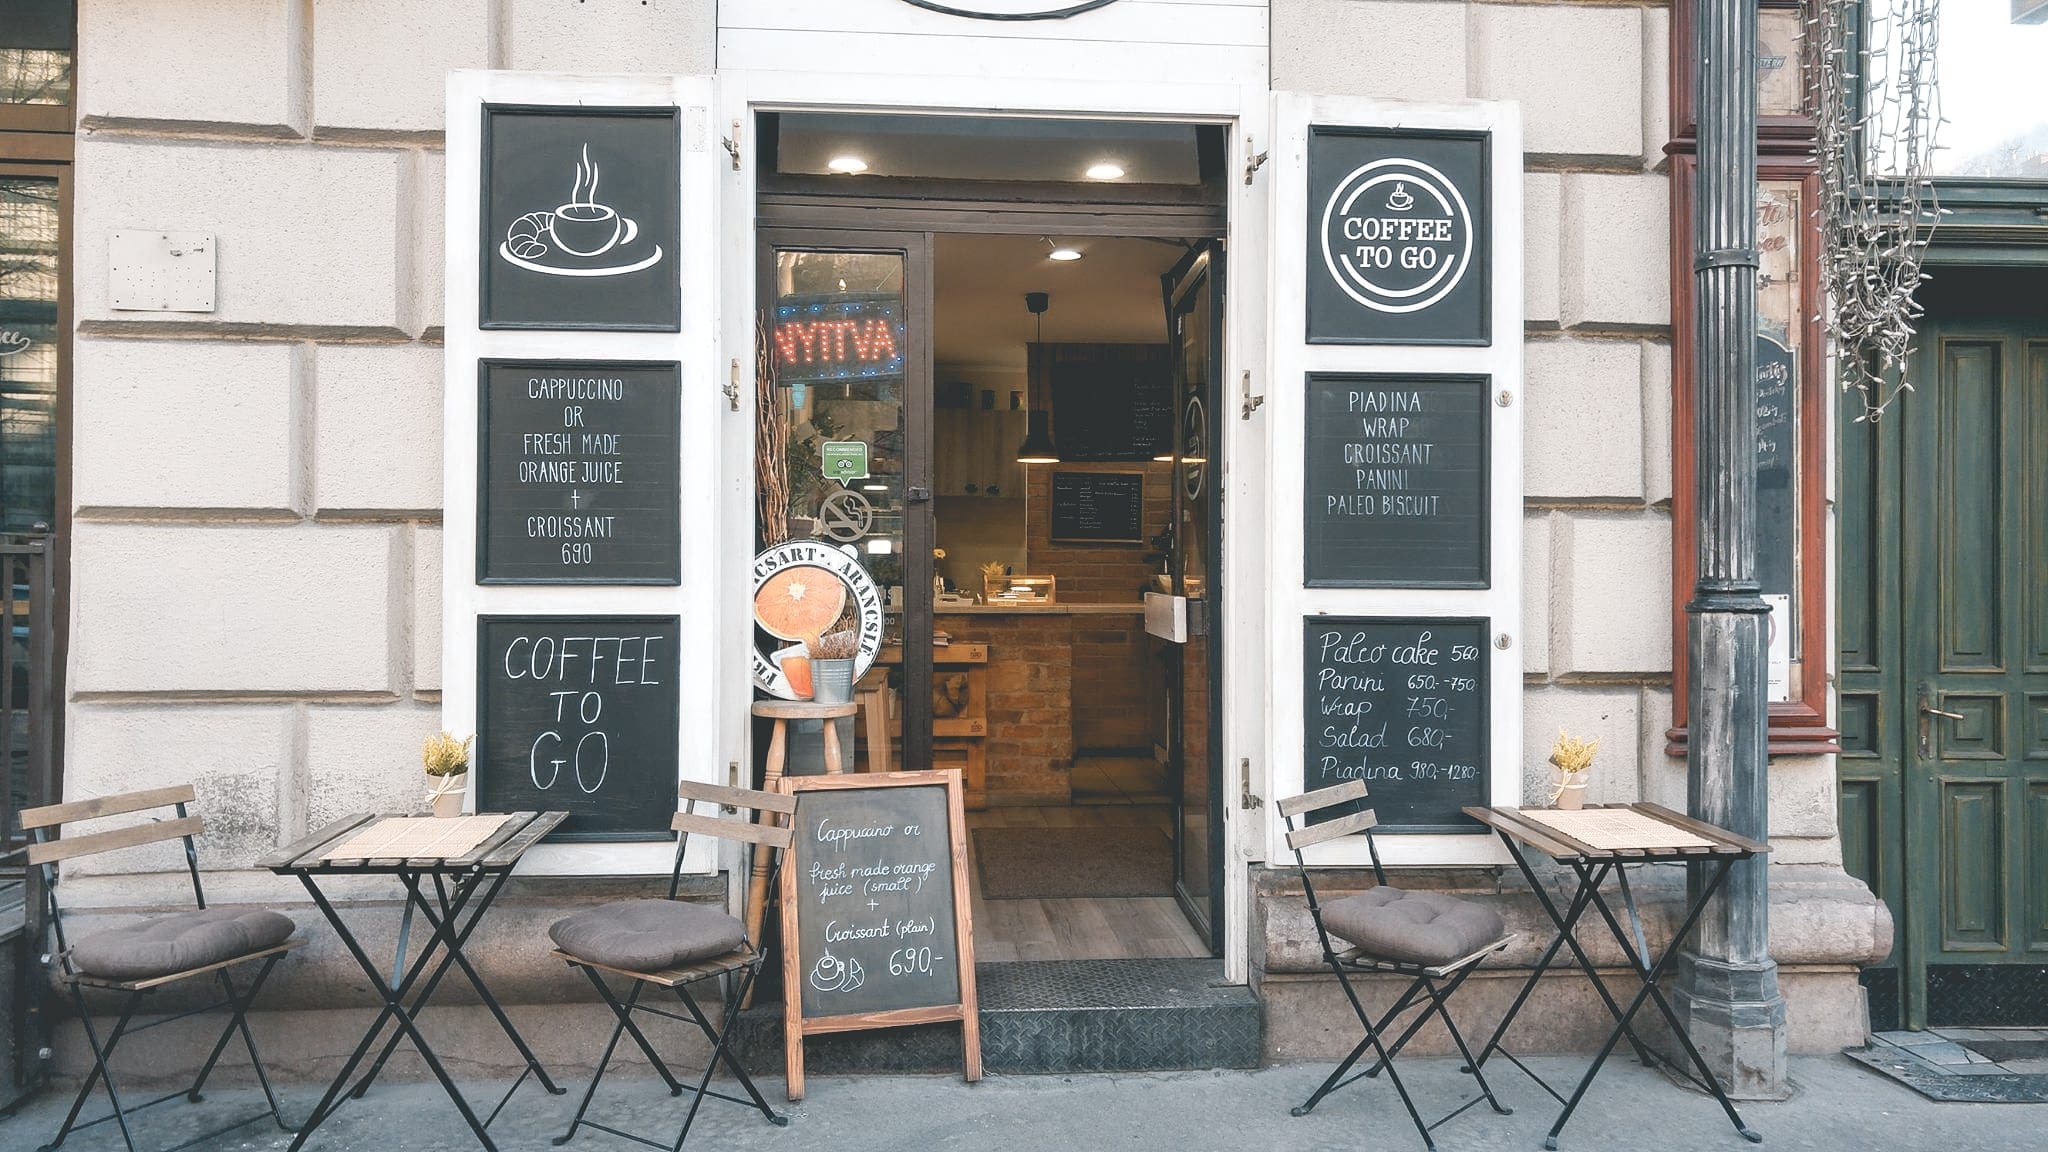 Boedapest, Hier kan je de beste koffie drinken in Boedapest | Coffee Joints